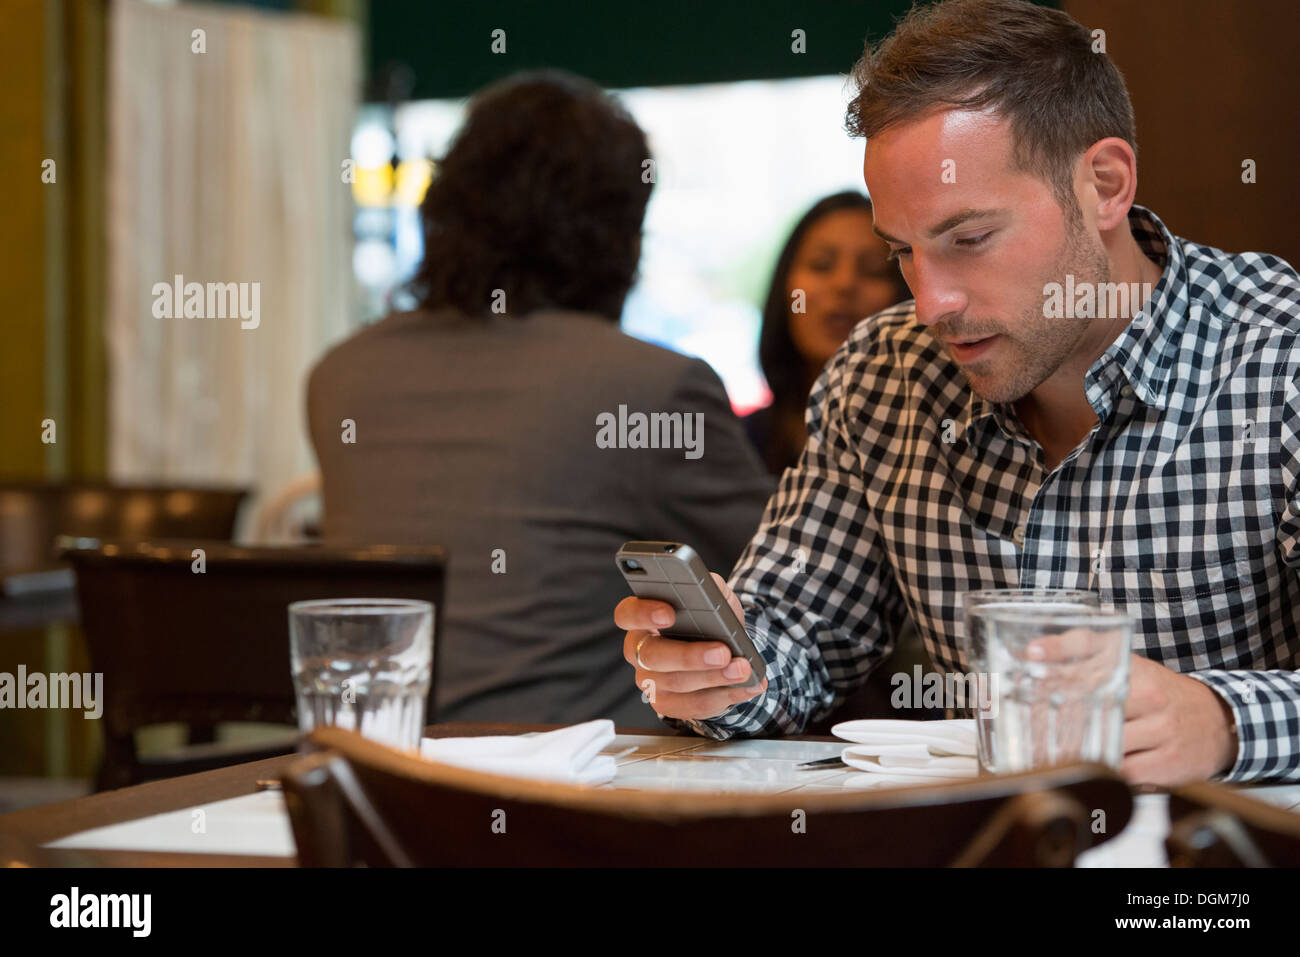 Les gens d'affaires. Deux personnes de parler les uns aux autres, et un homme à une table séparée vérifie son téléphone. Banque D'Images